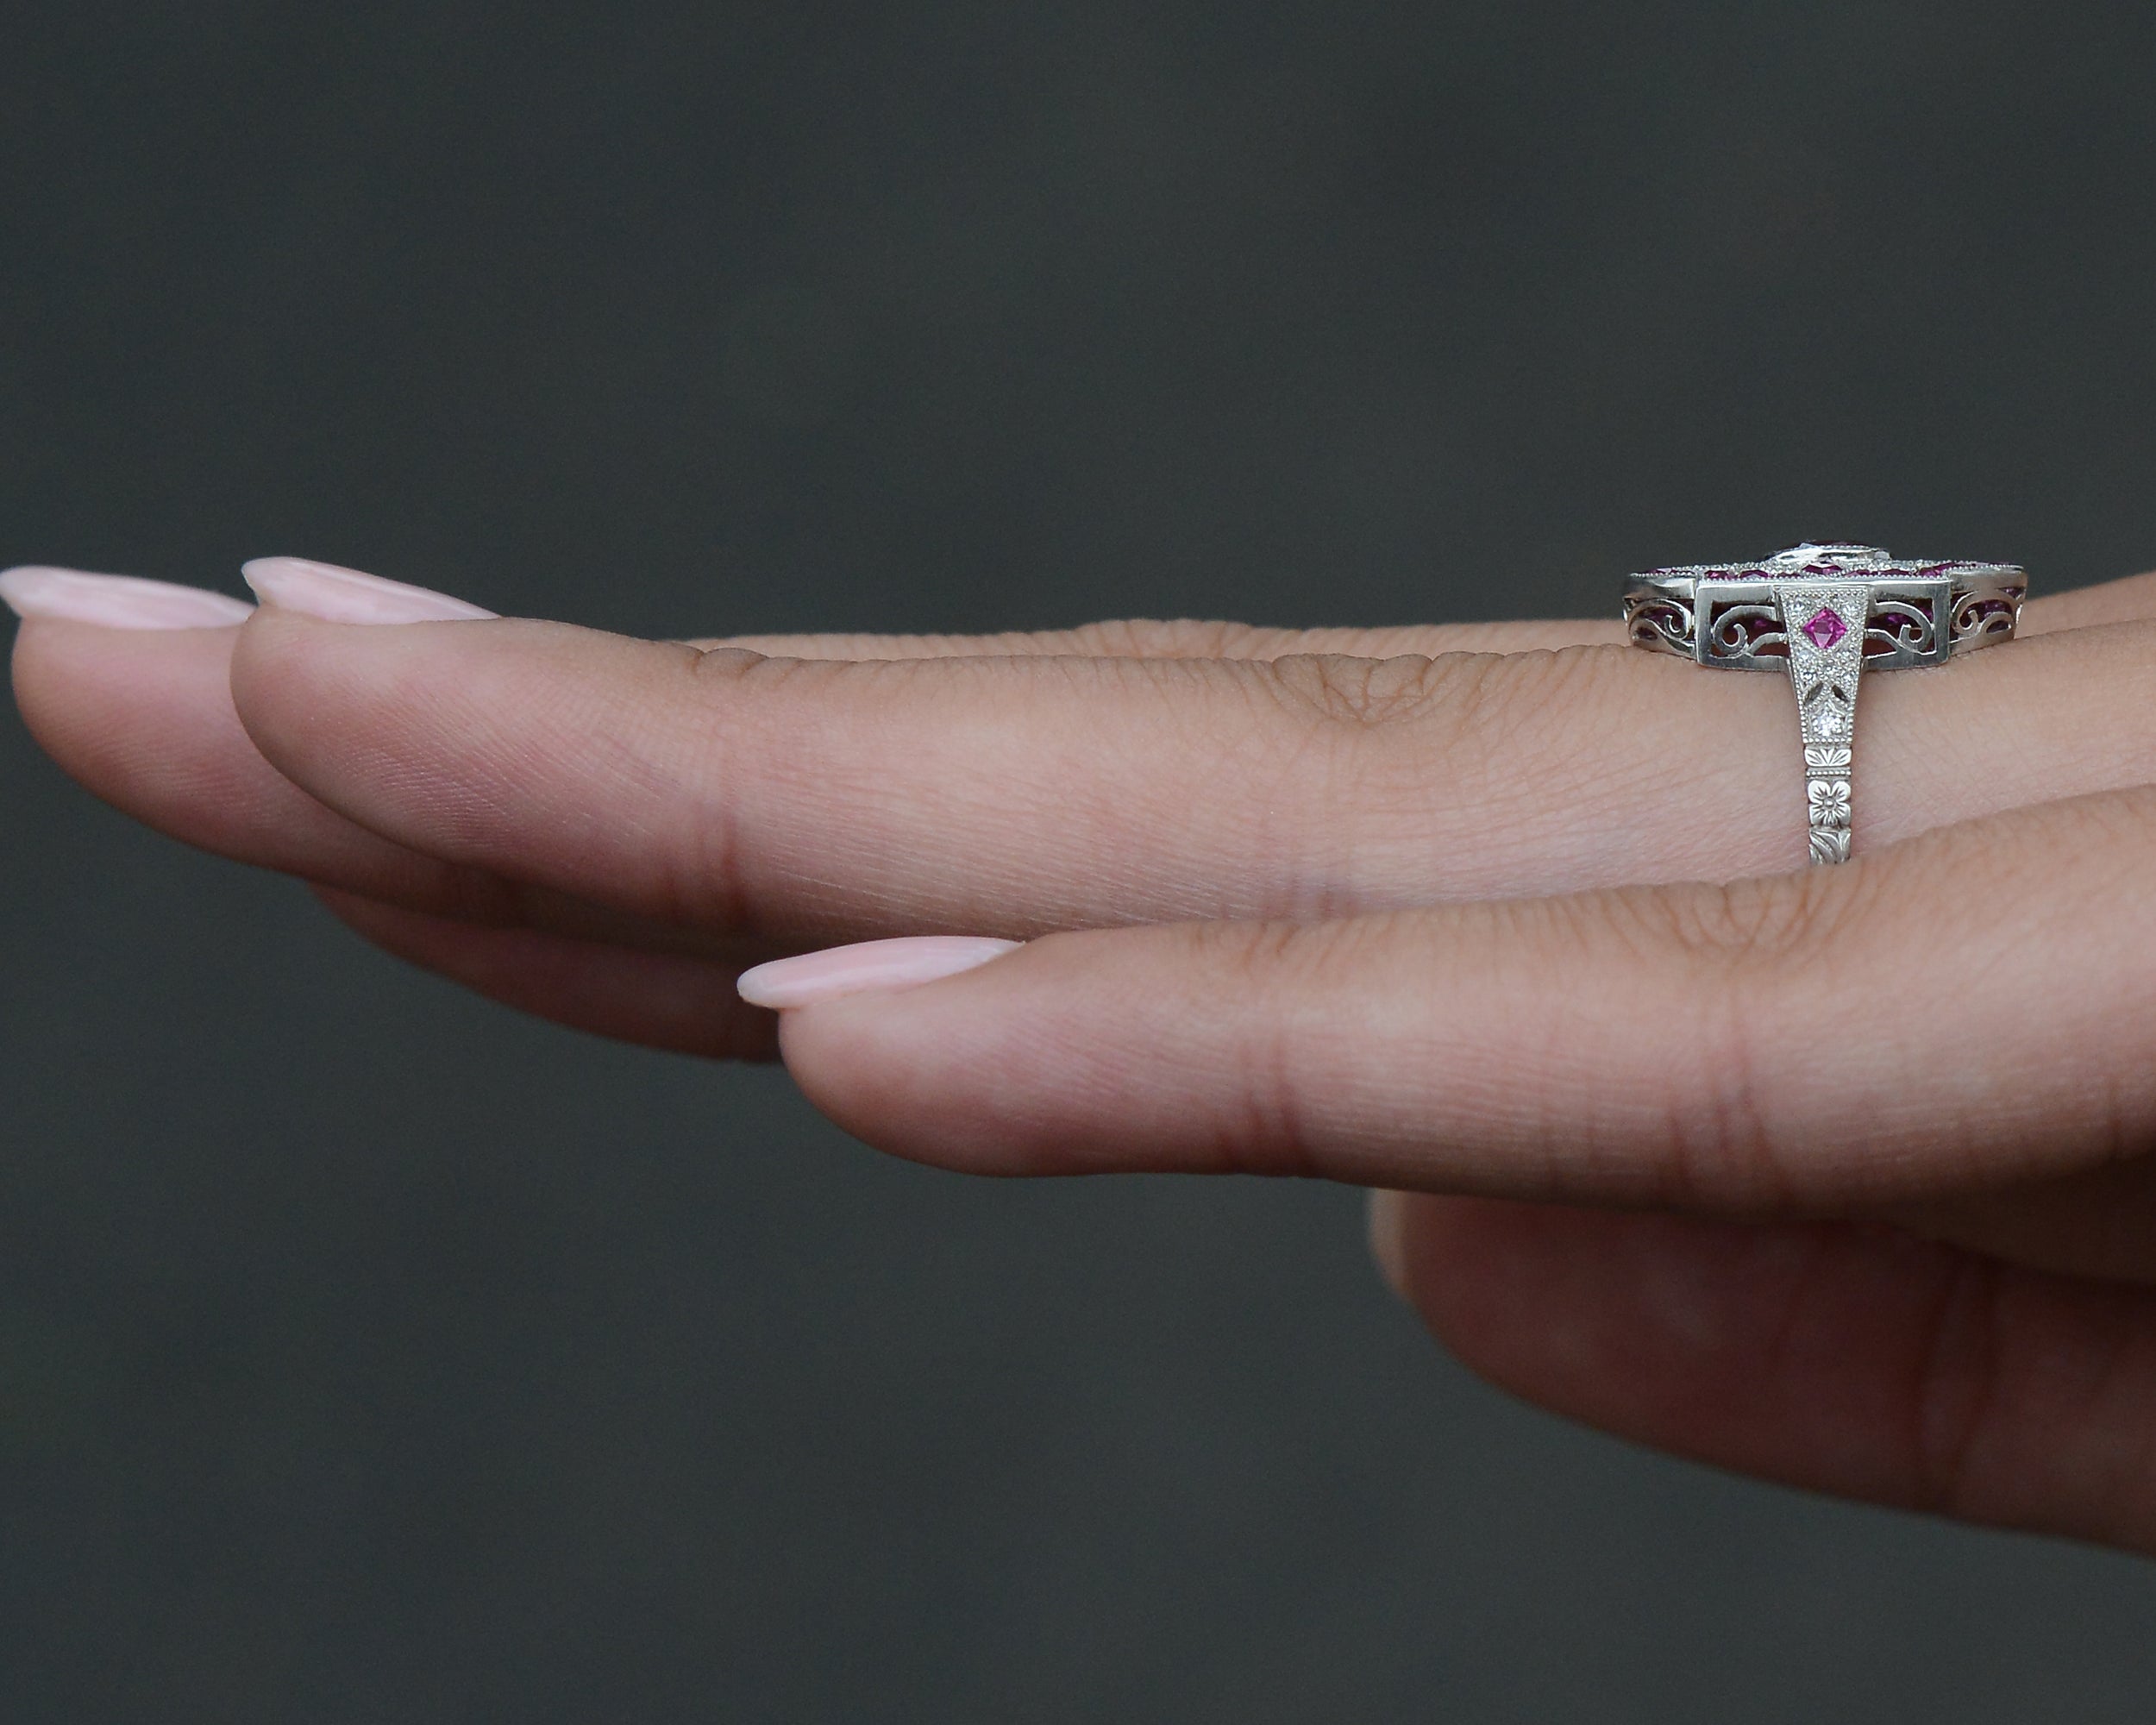 Vintage Filigree Ruby Diamond Shield Engagement Ring